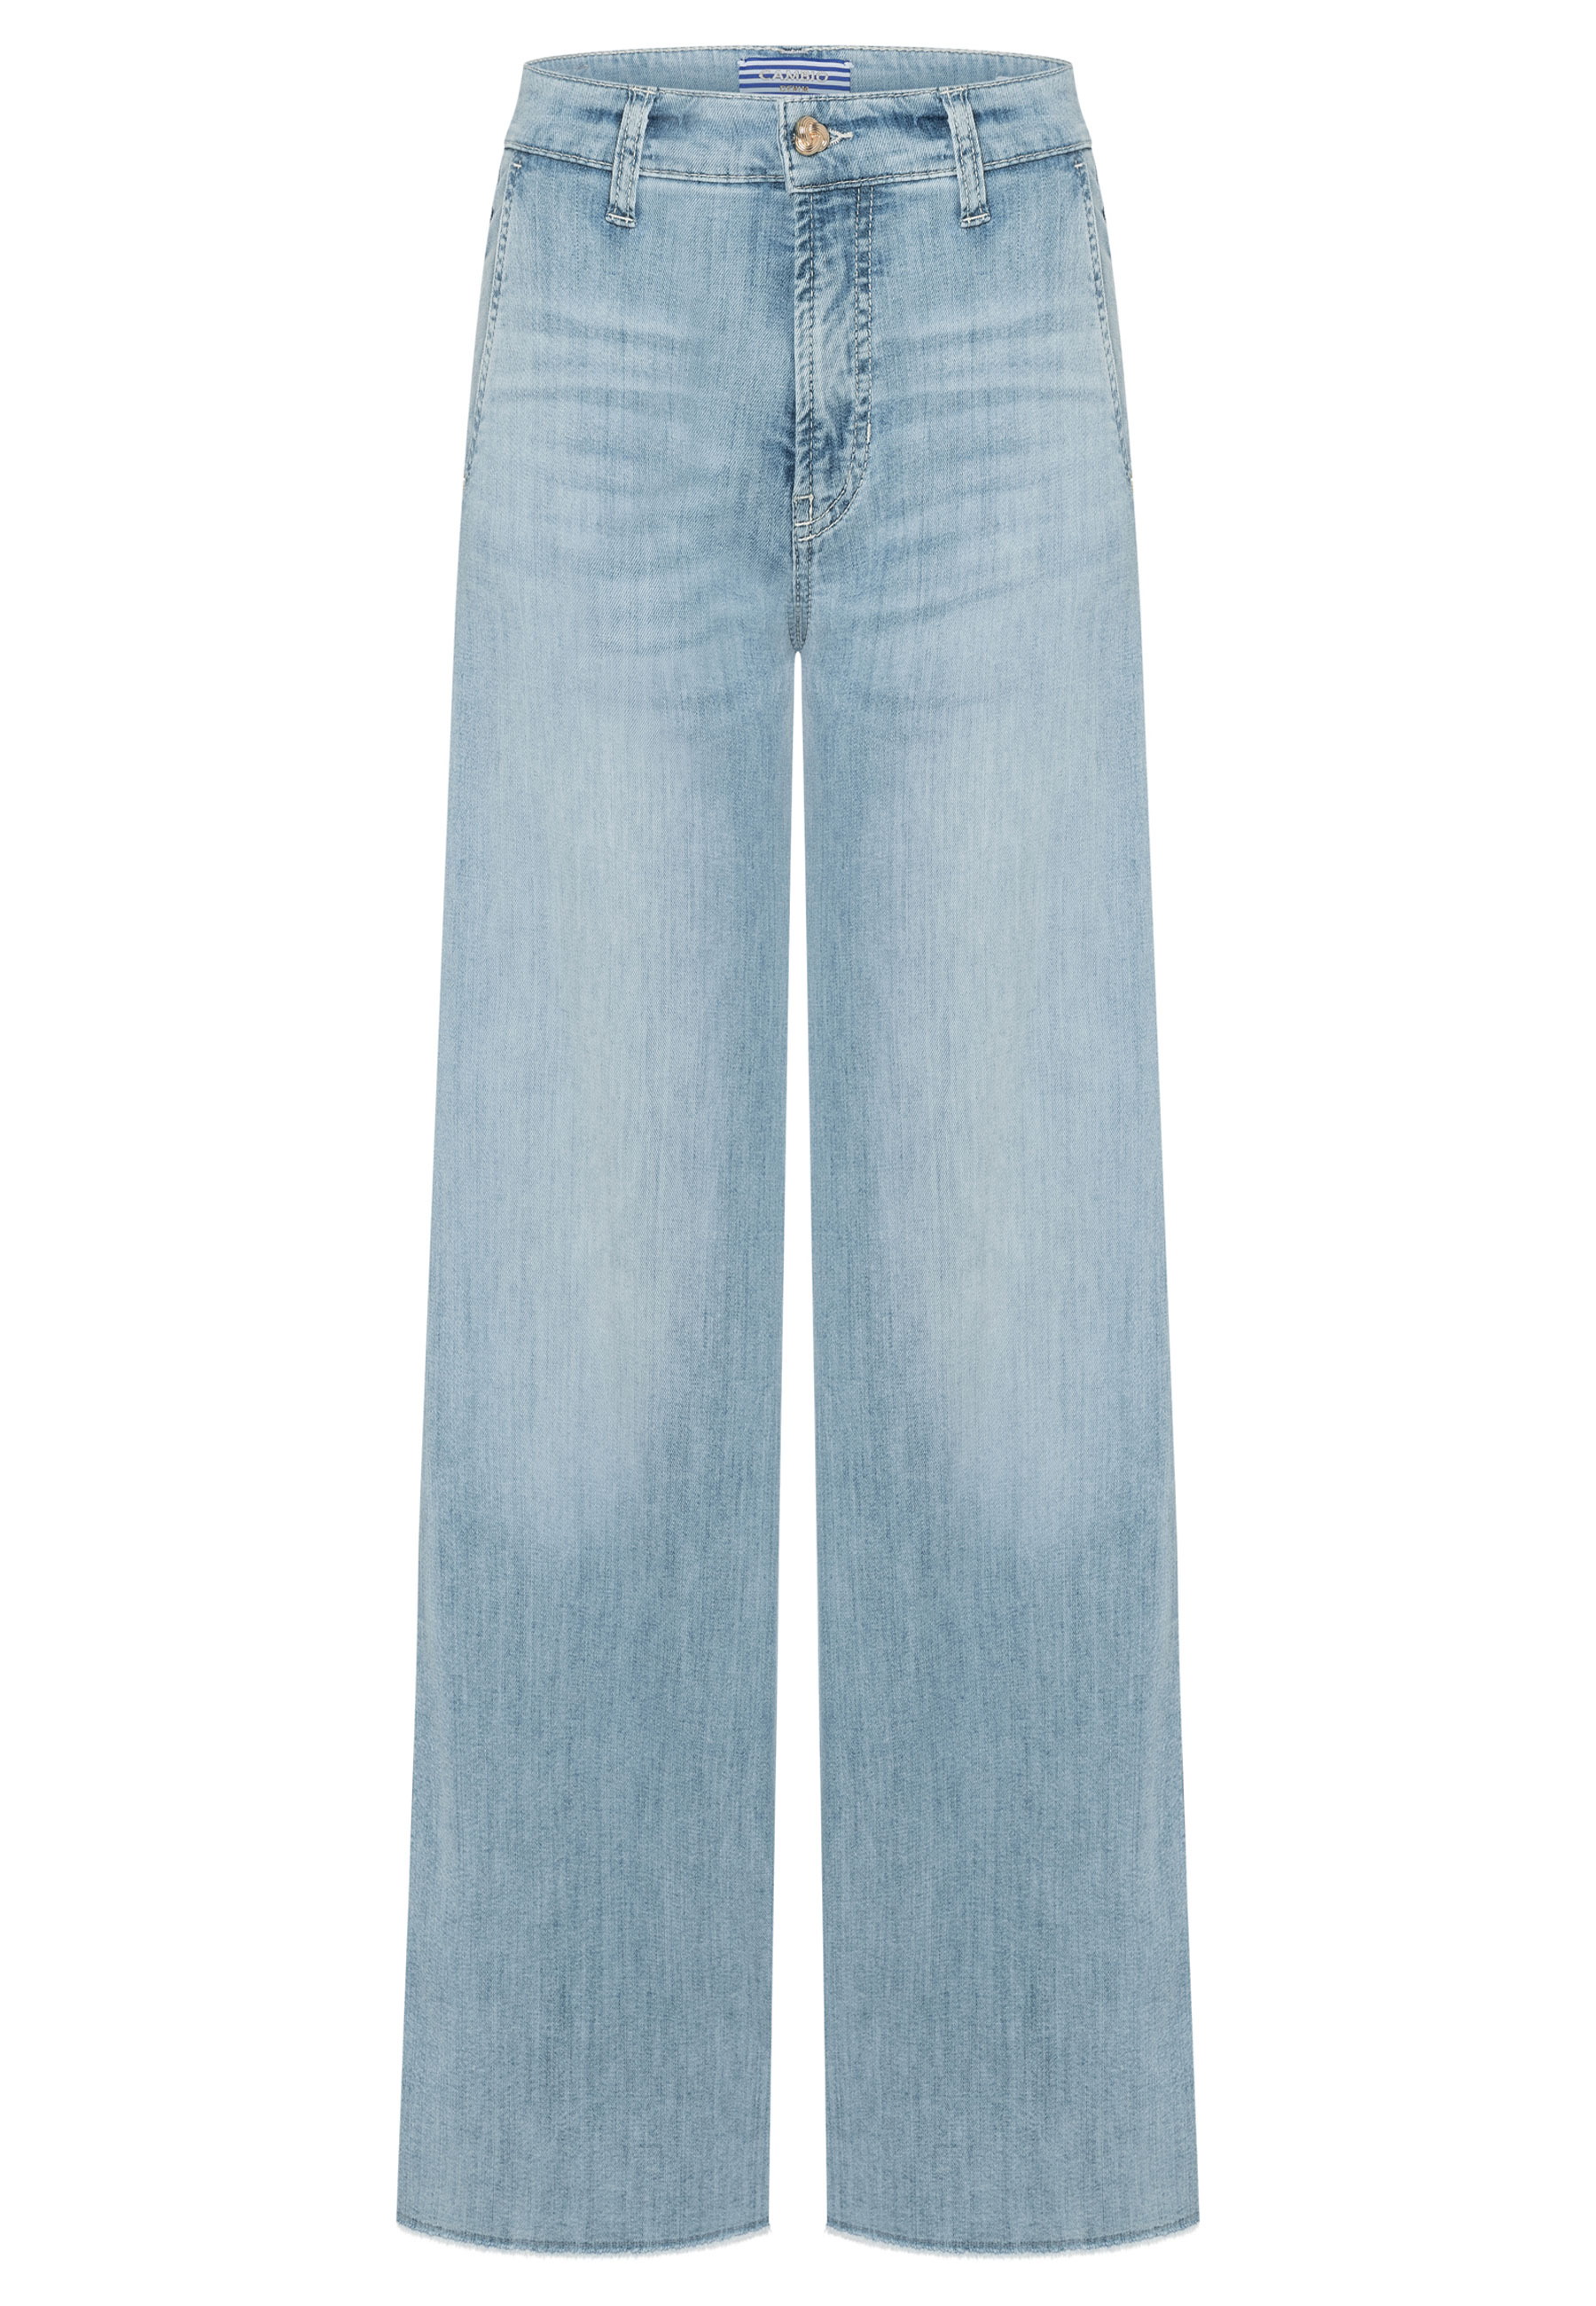 Jeans Lichtblauw Alek jeans lichtblauw